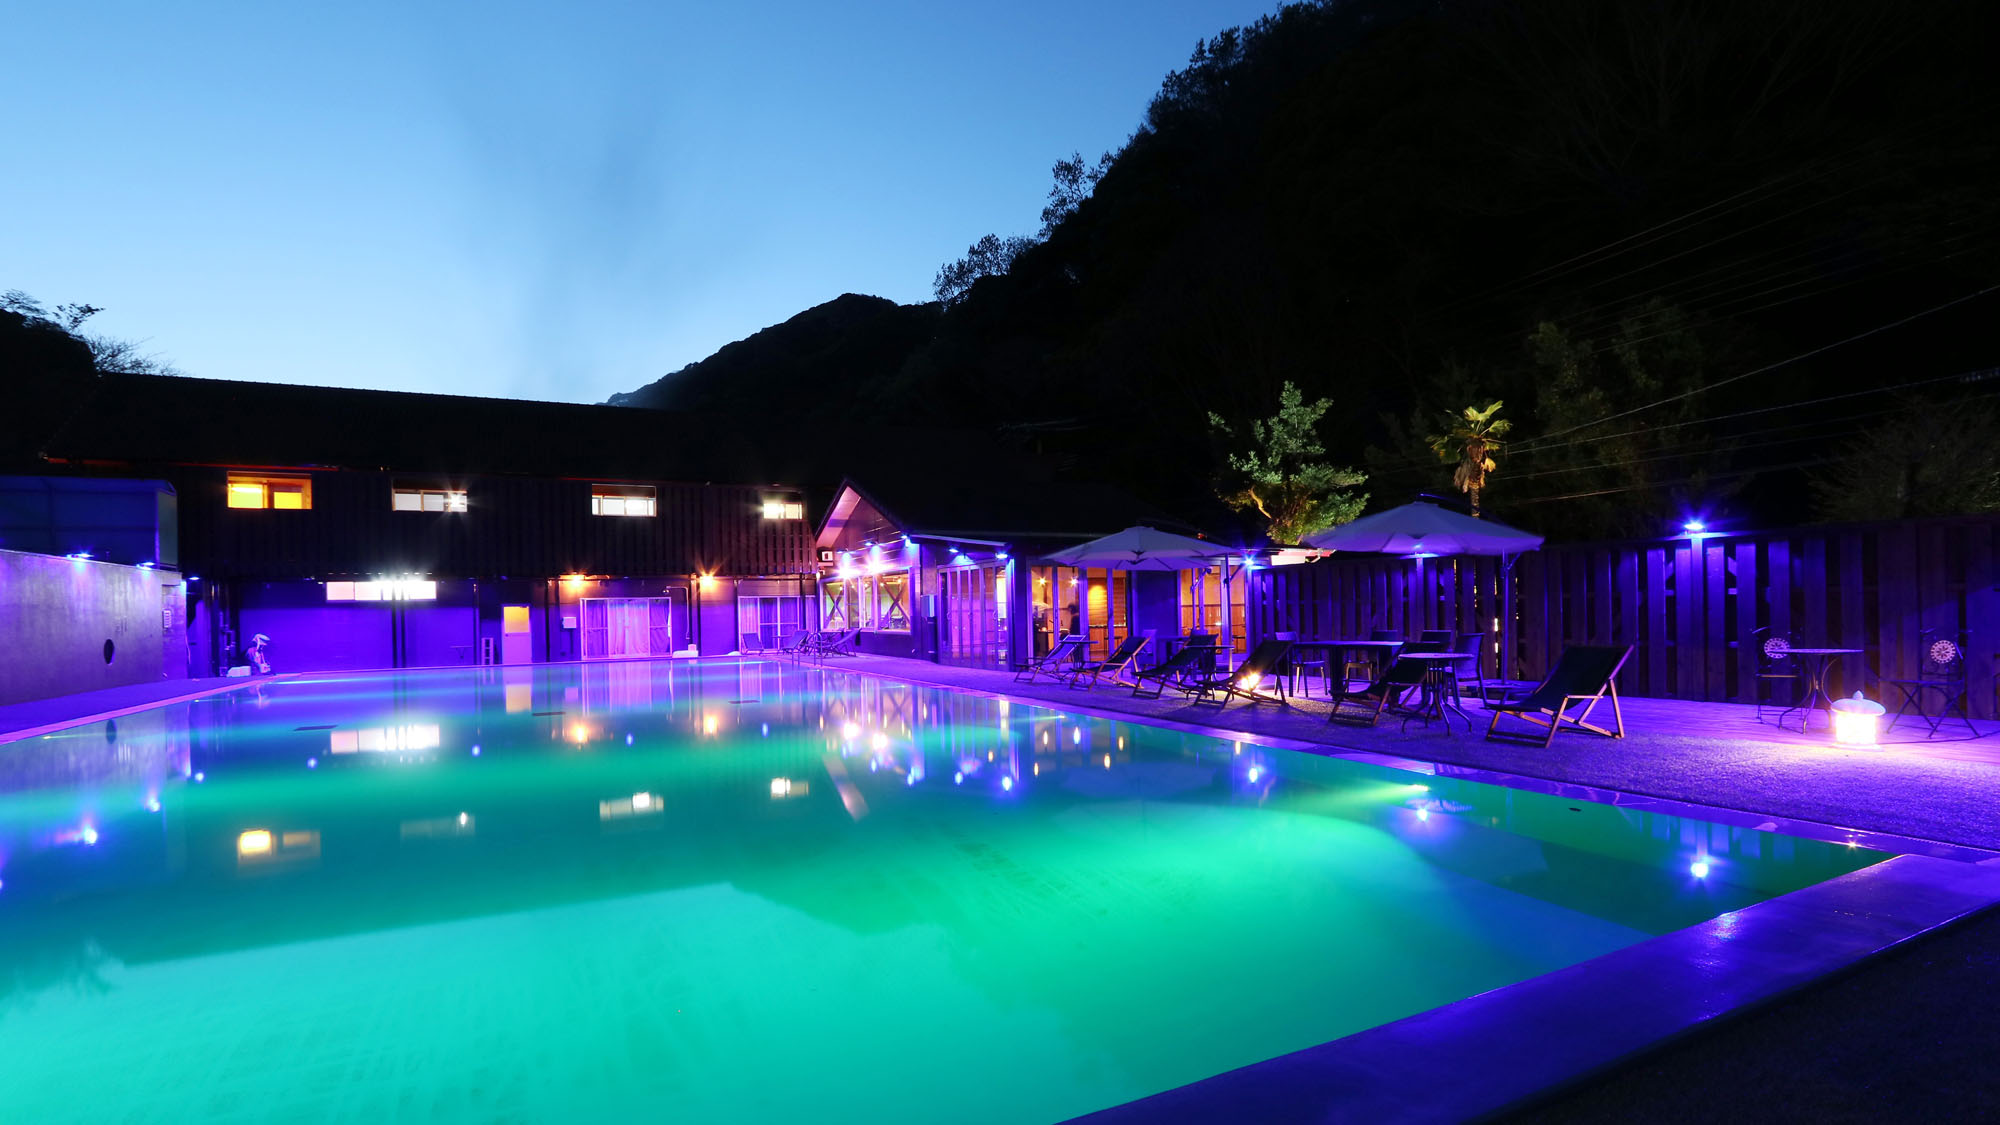 ナイトプール -Night pool-◆カラーライトに照らされた、夜のプール